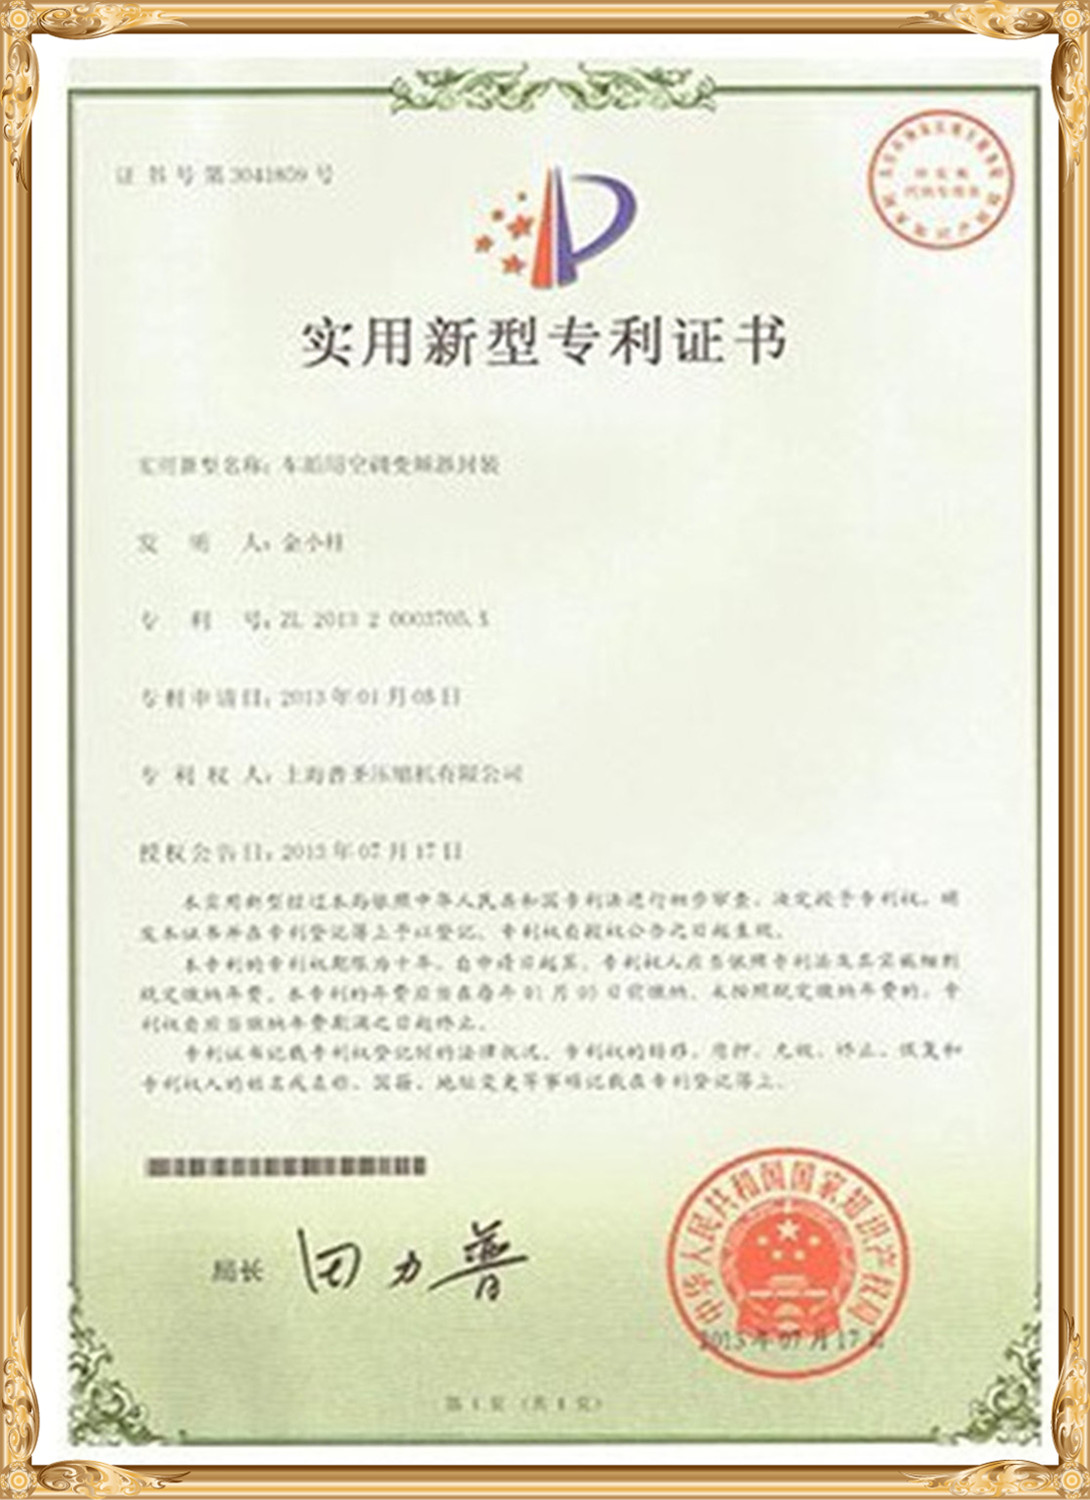 Testen & Certificaten (11)